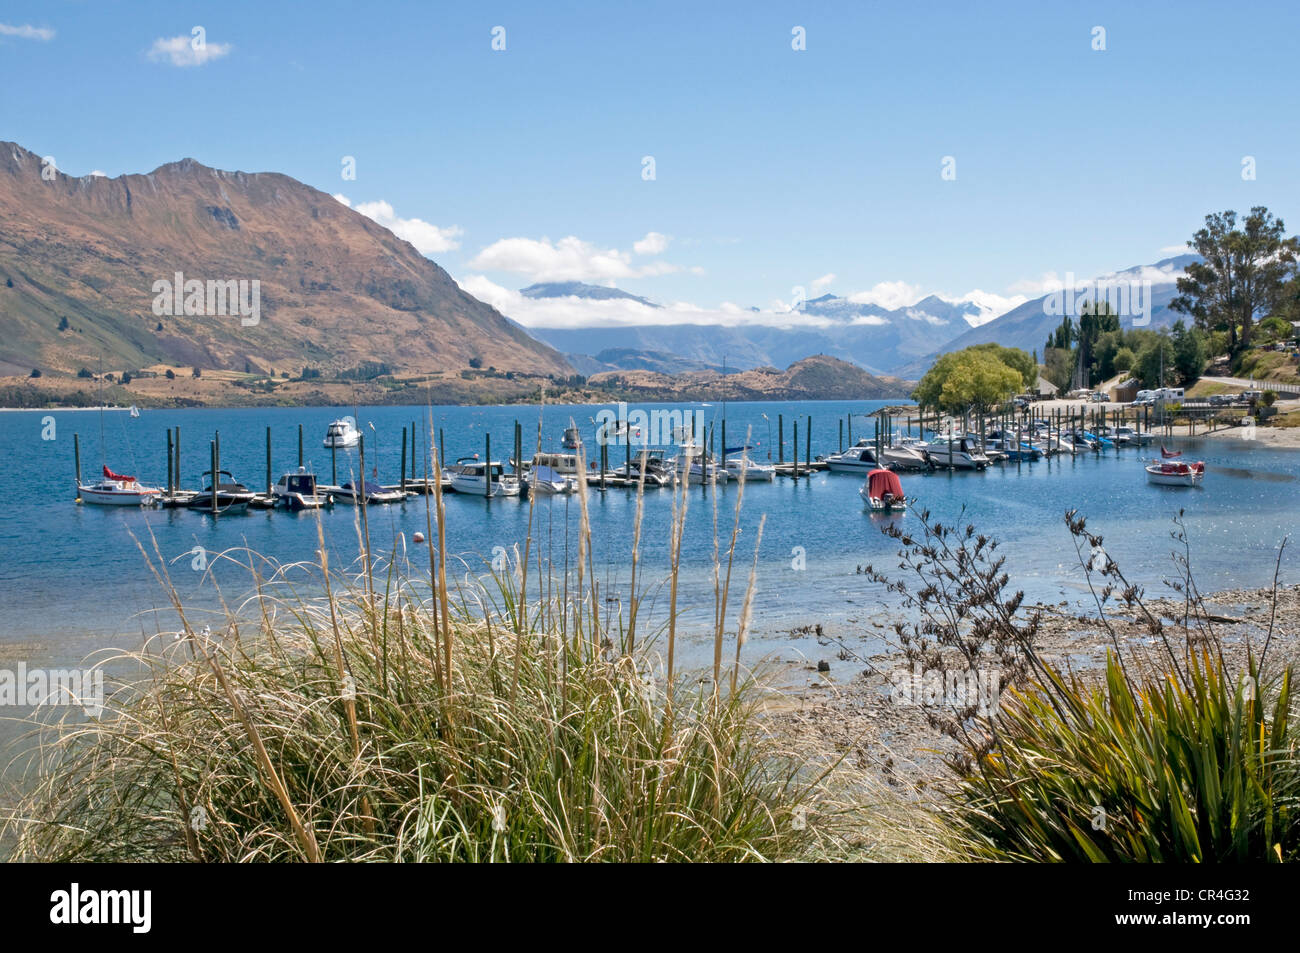 Lake Wanaka in New Zealand's South island Stock Photo